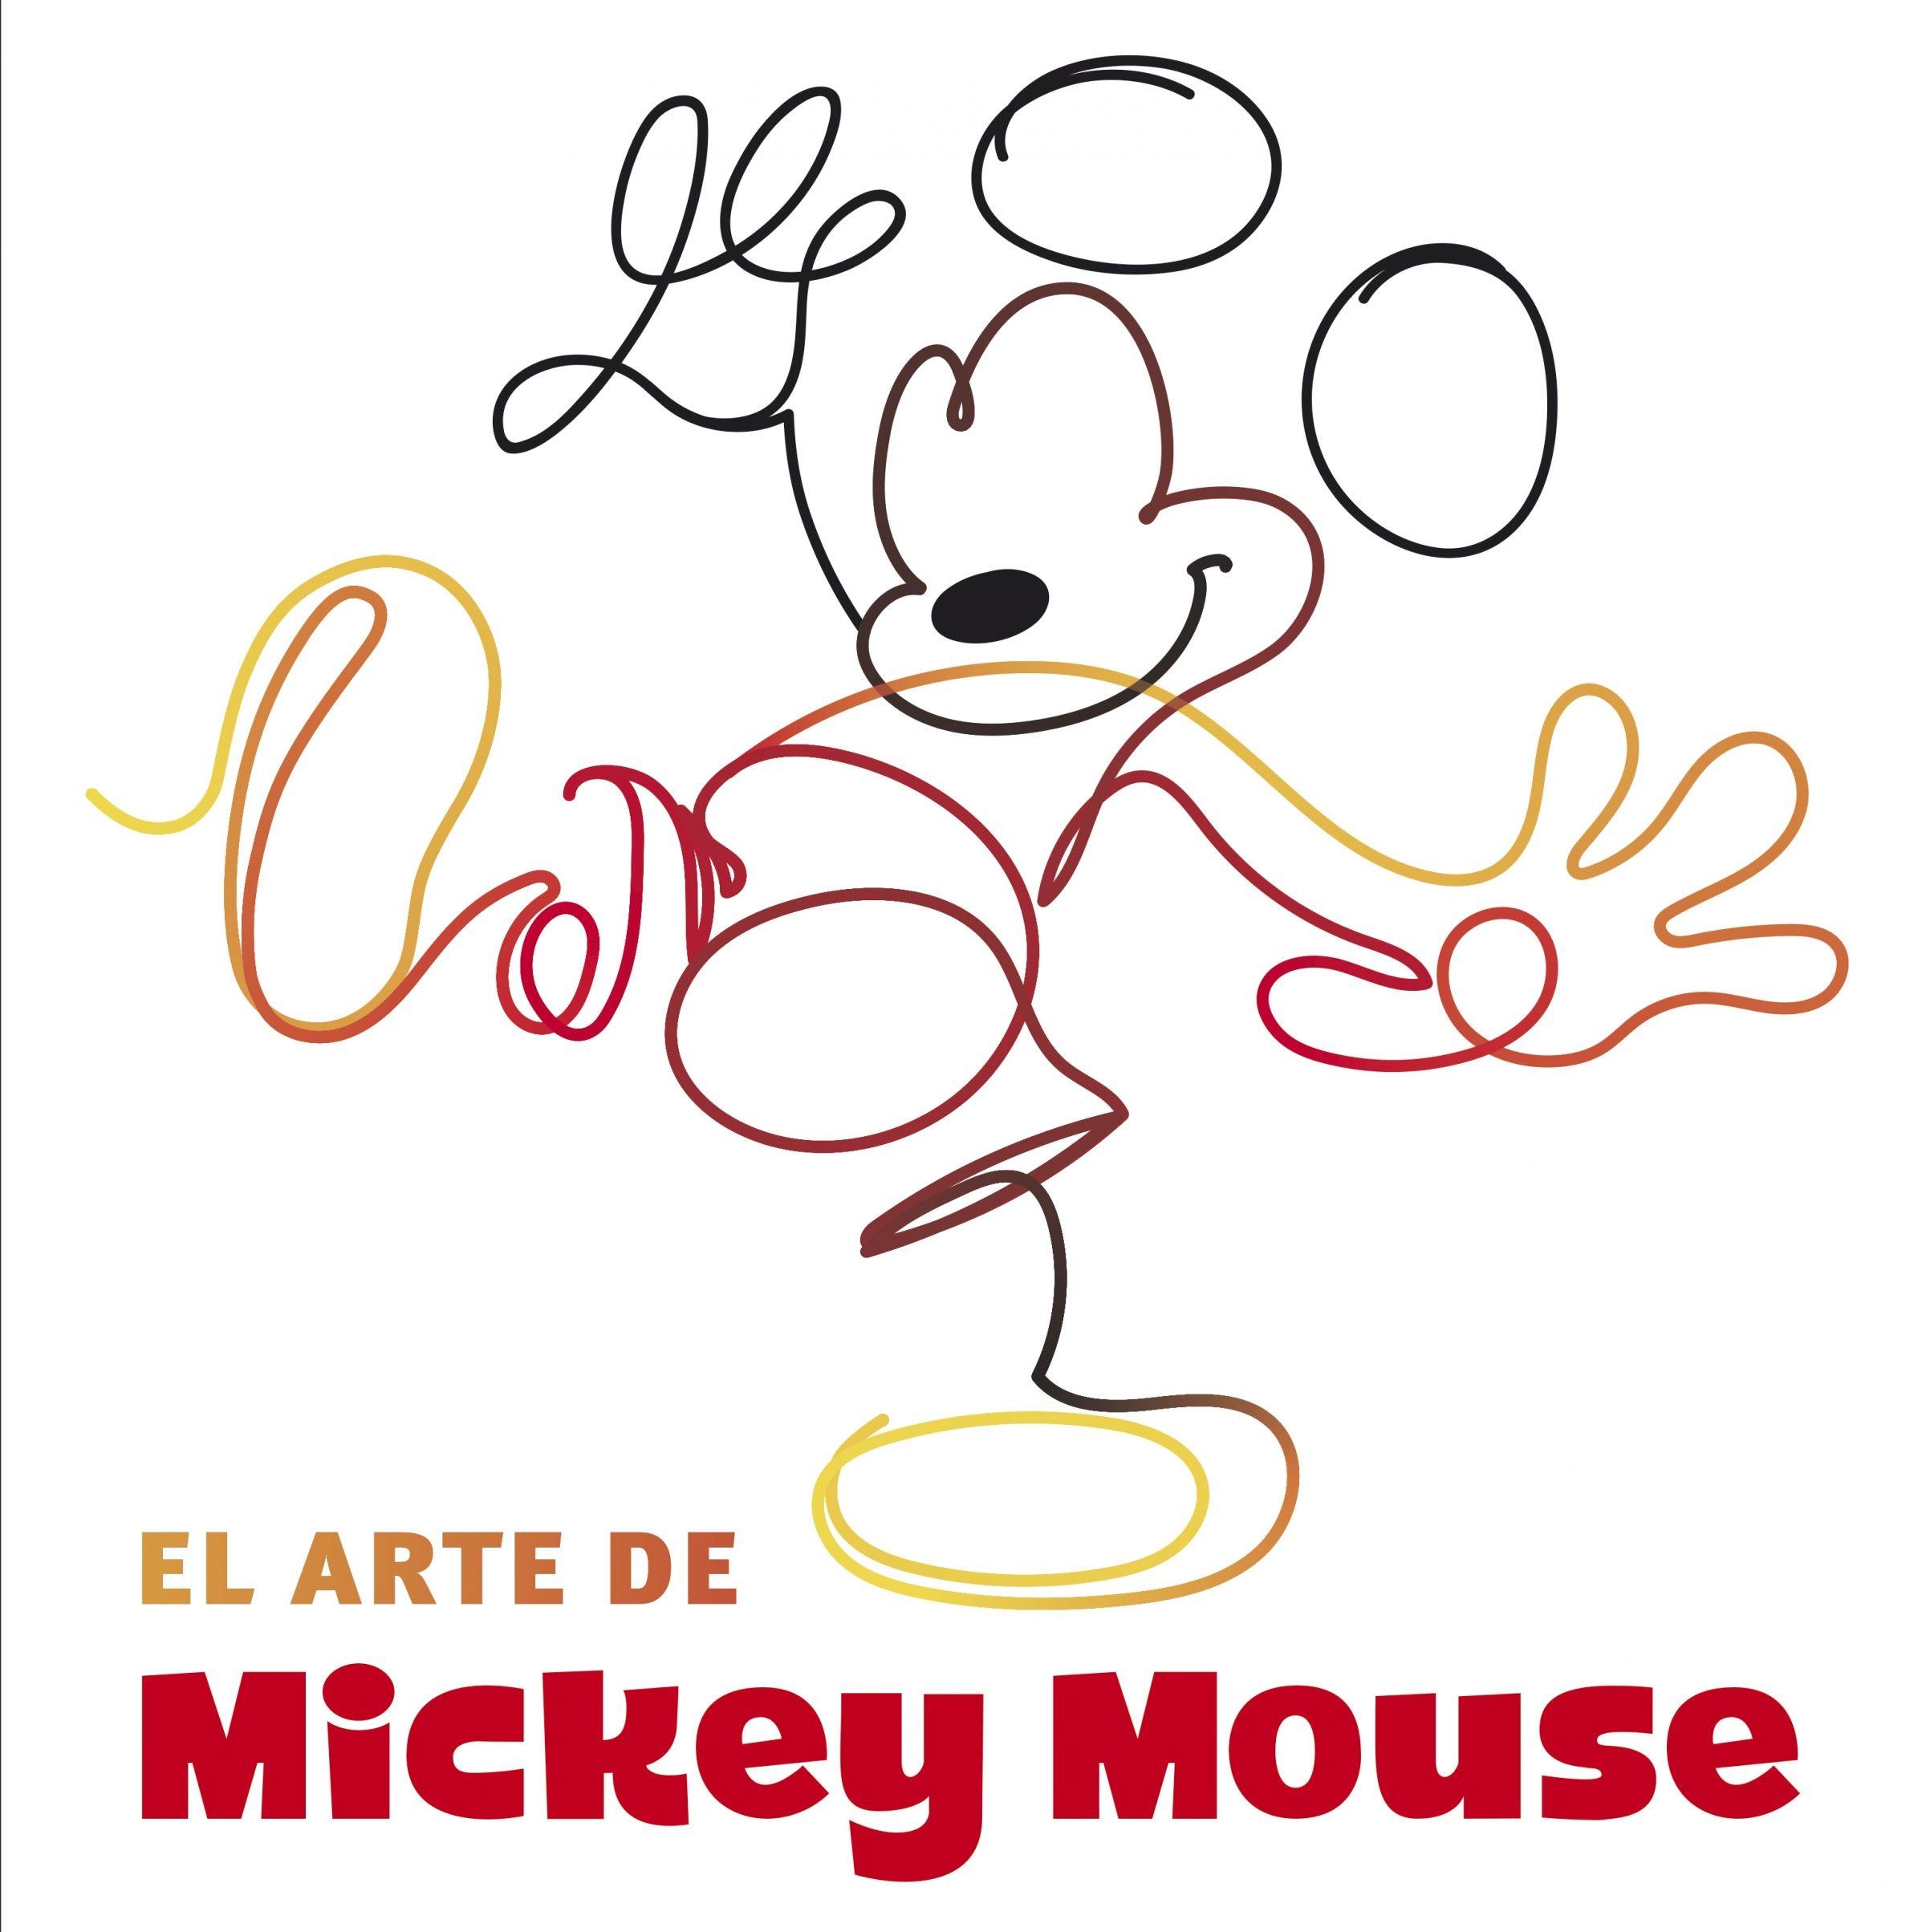 El arte de Mickey Mouse. 